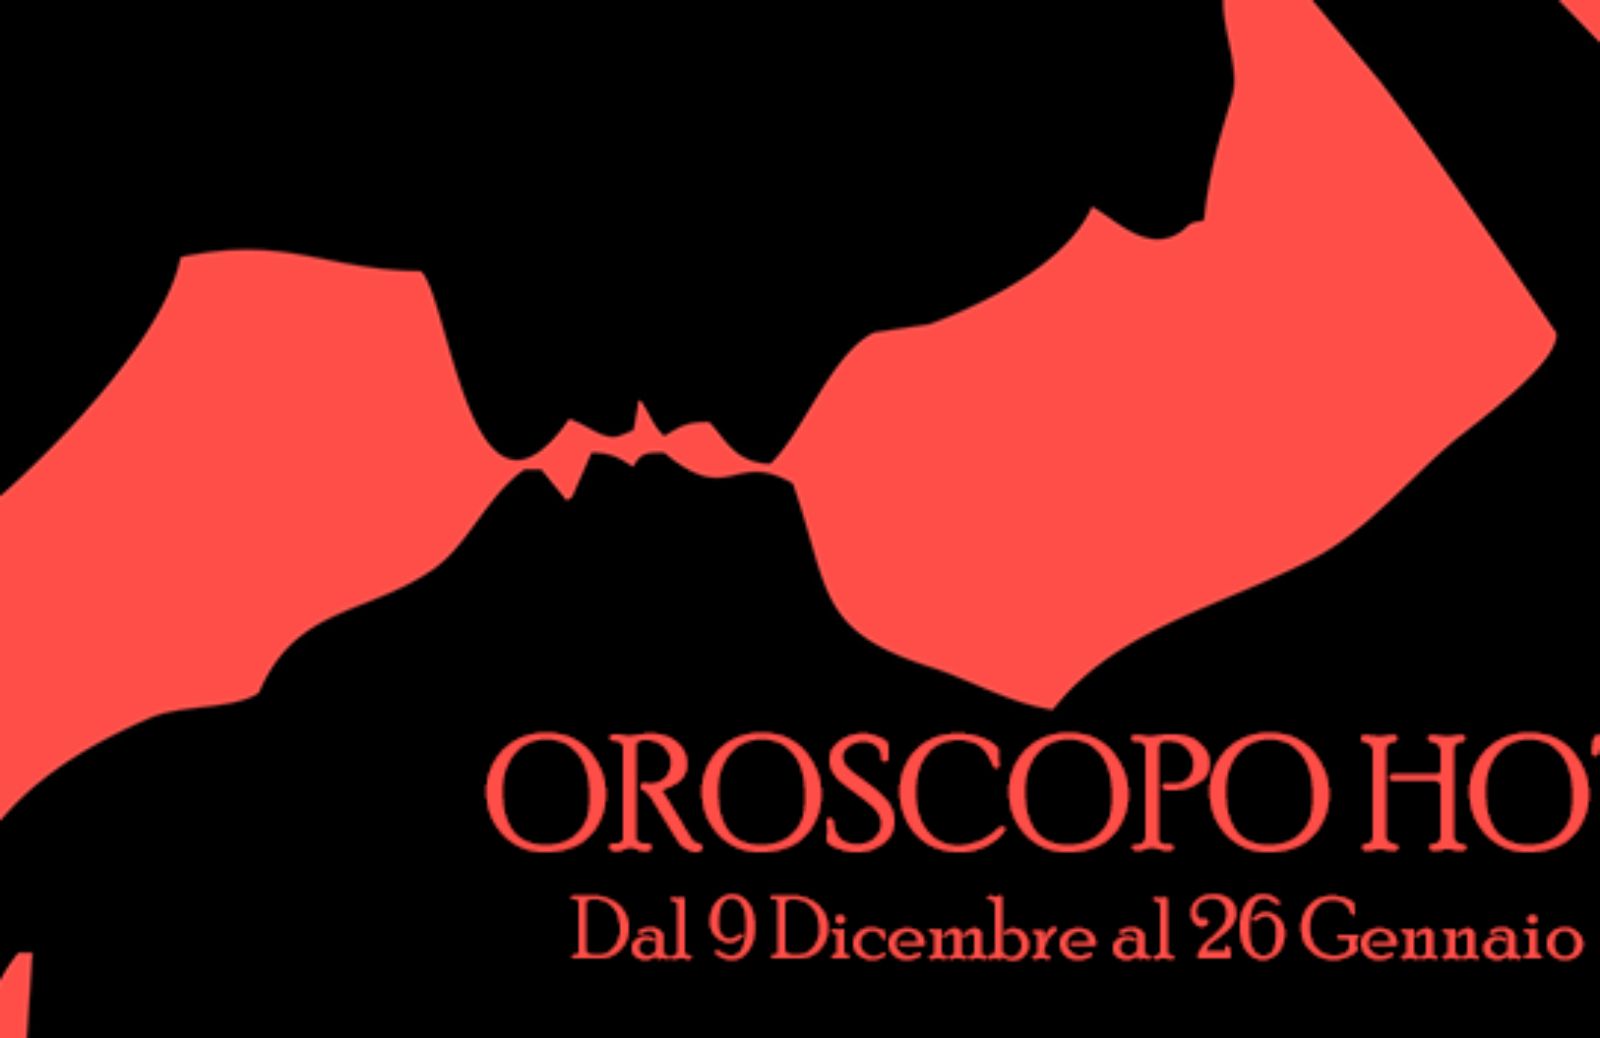 Oroscopo Hot: dal 9 dicembre al 26 gennaio